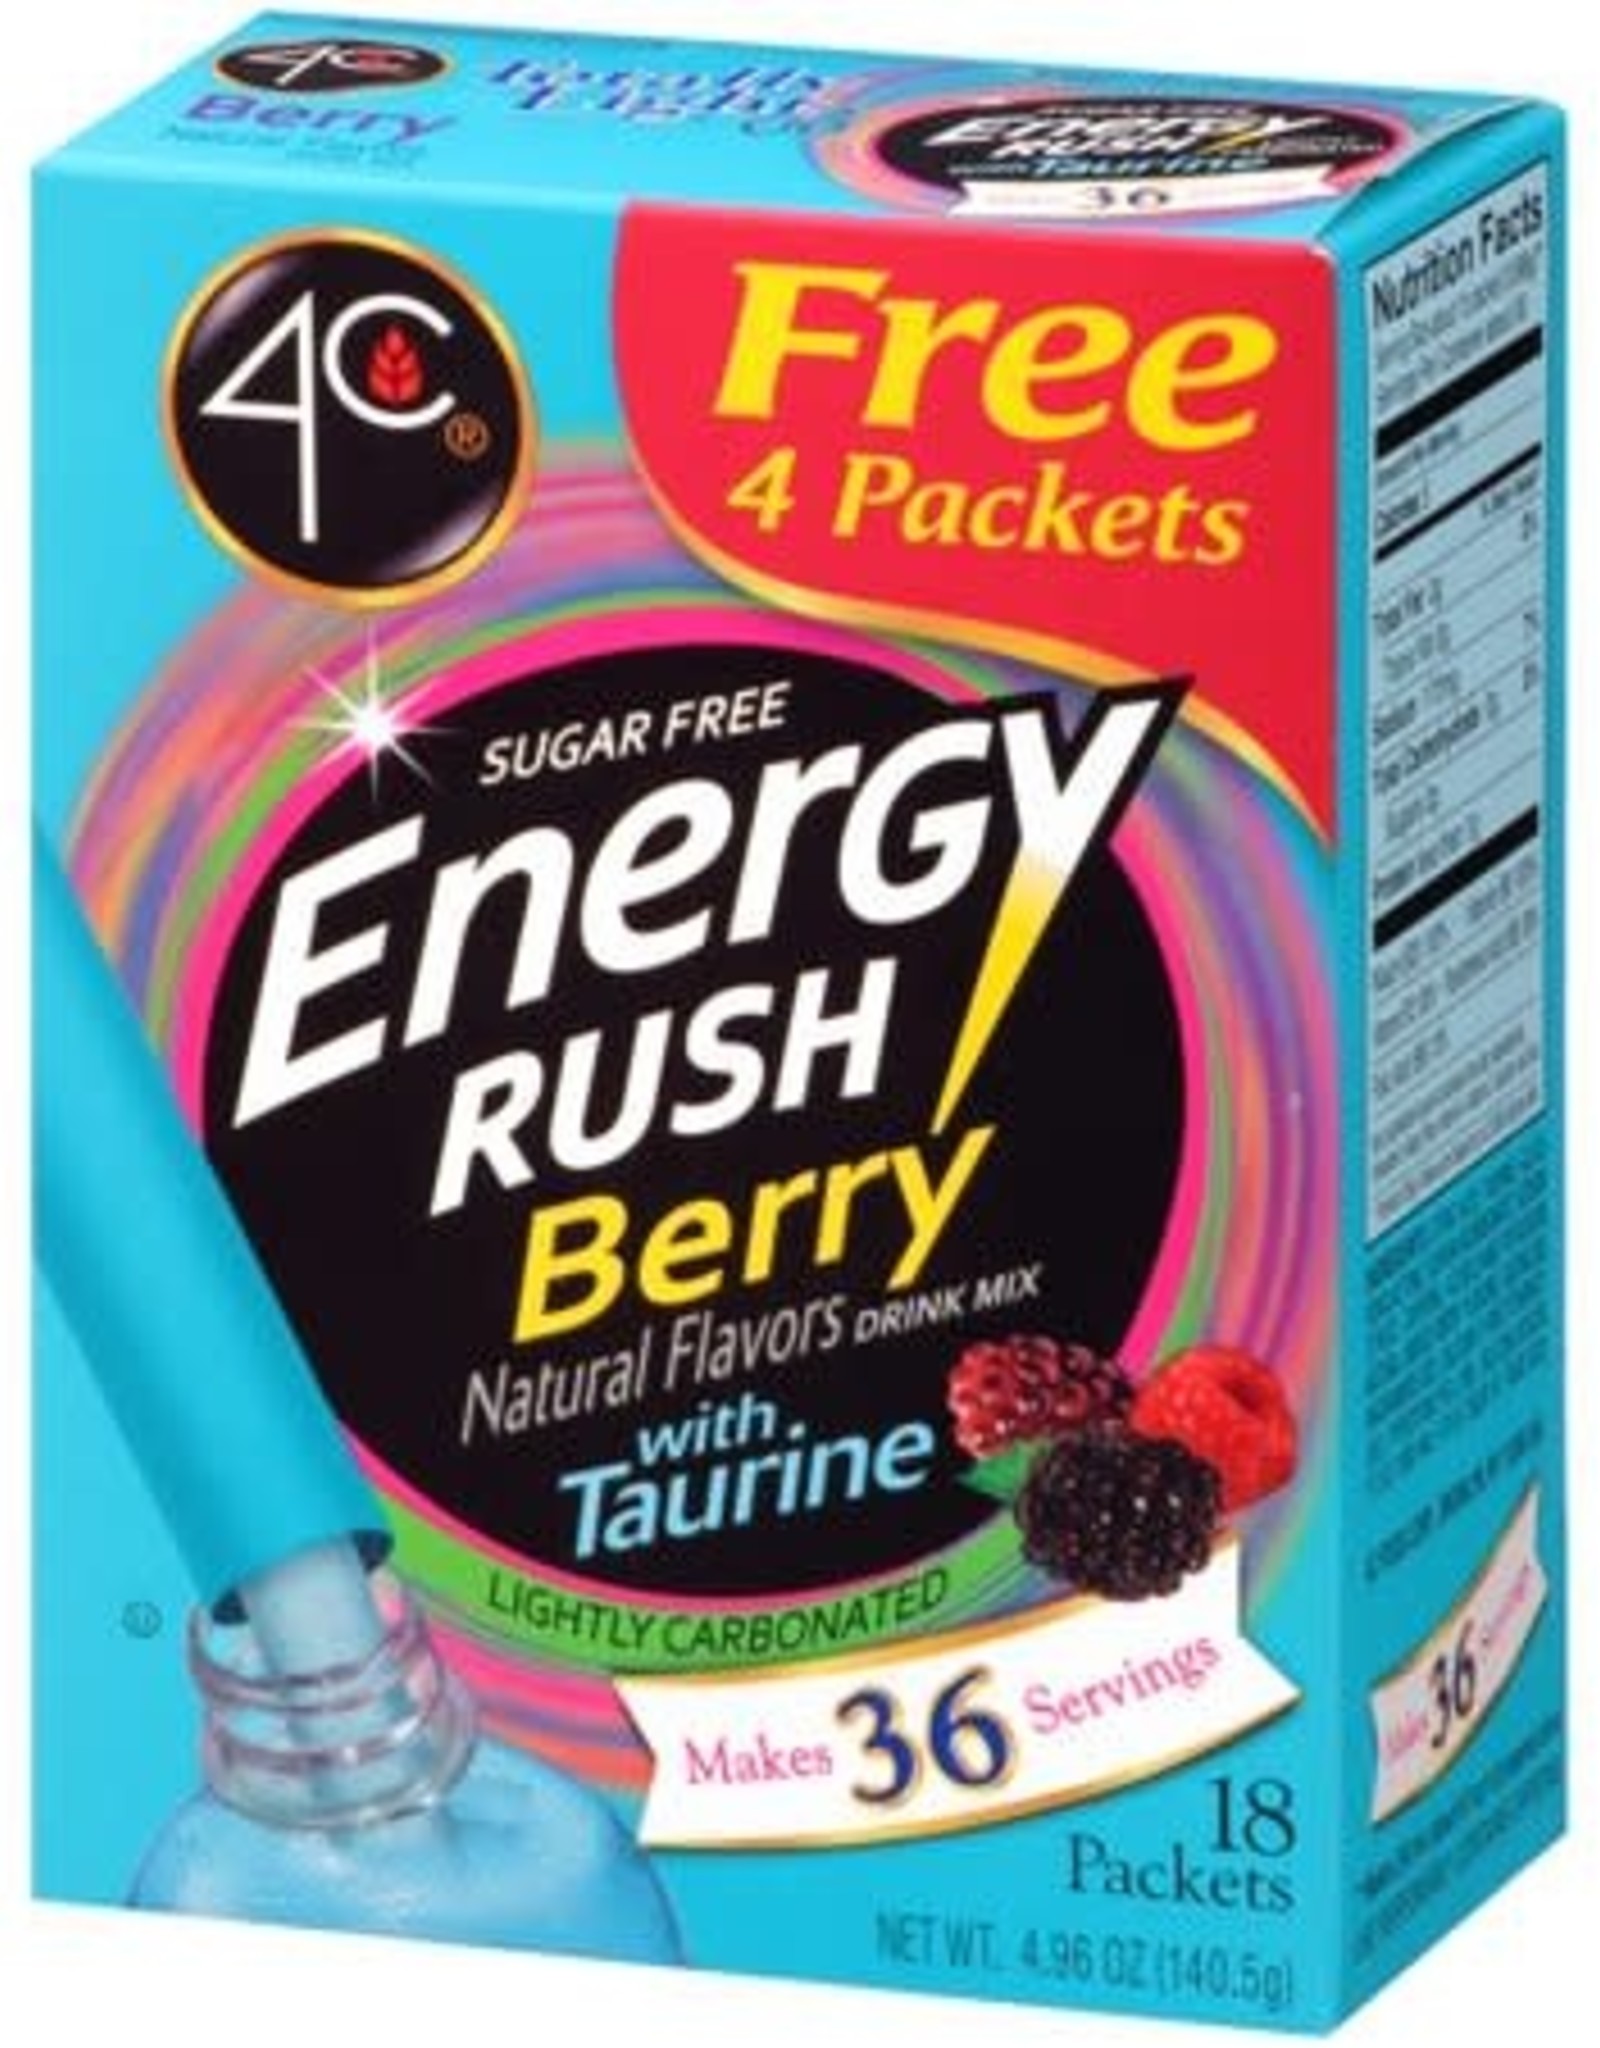 4C Drinks 4C Energy Rush Mixed Berry 18 sticks